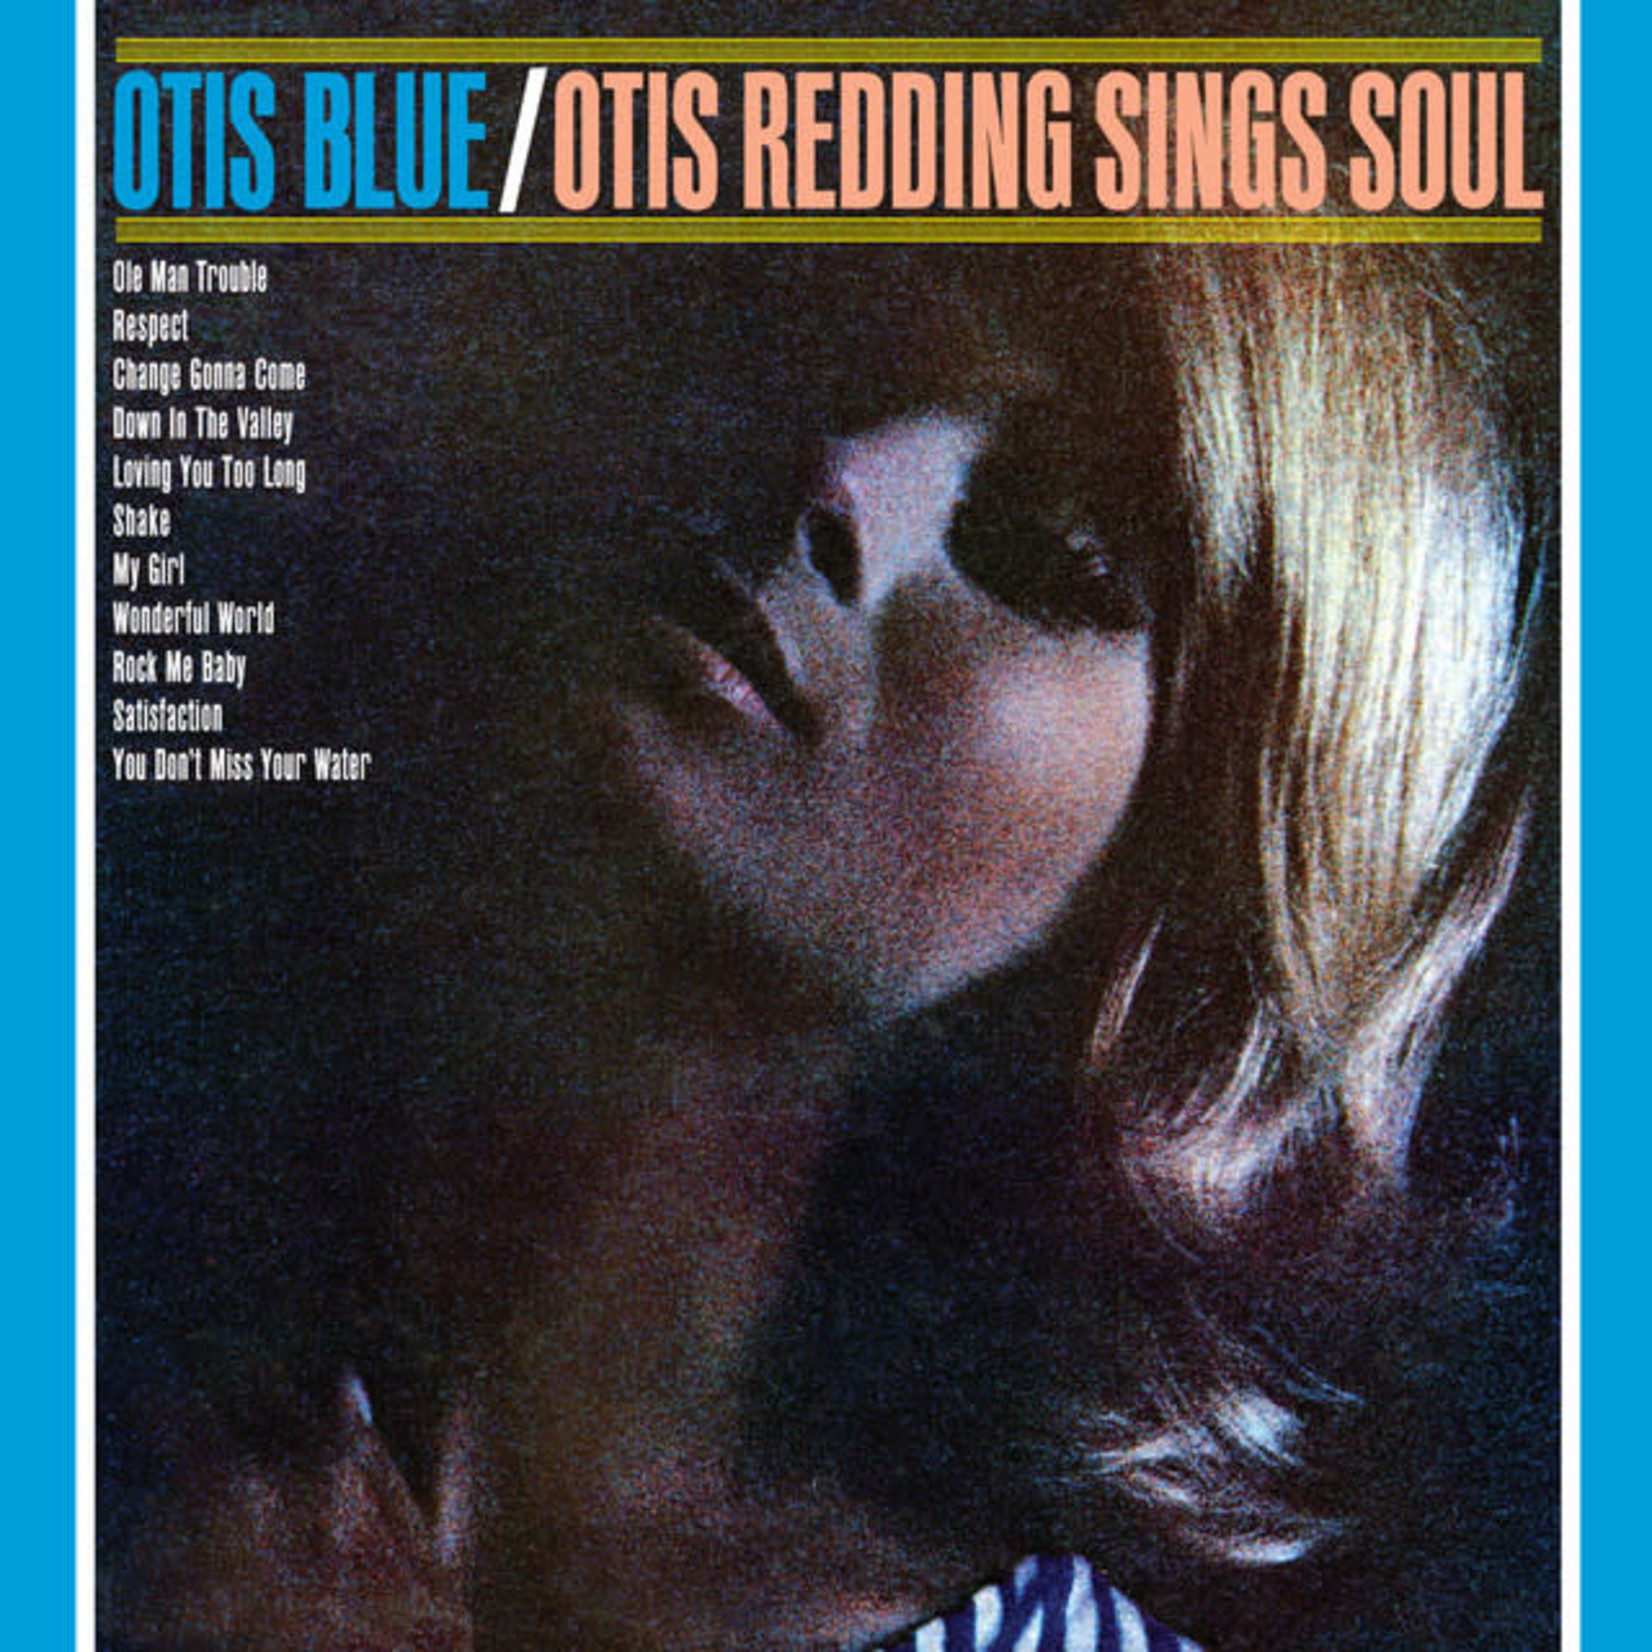 Vinyl Otis Redding - Otis Redding Sings Soul